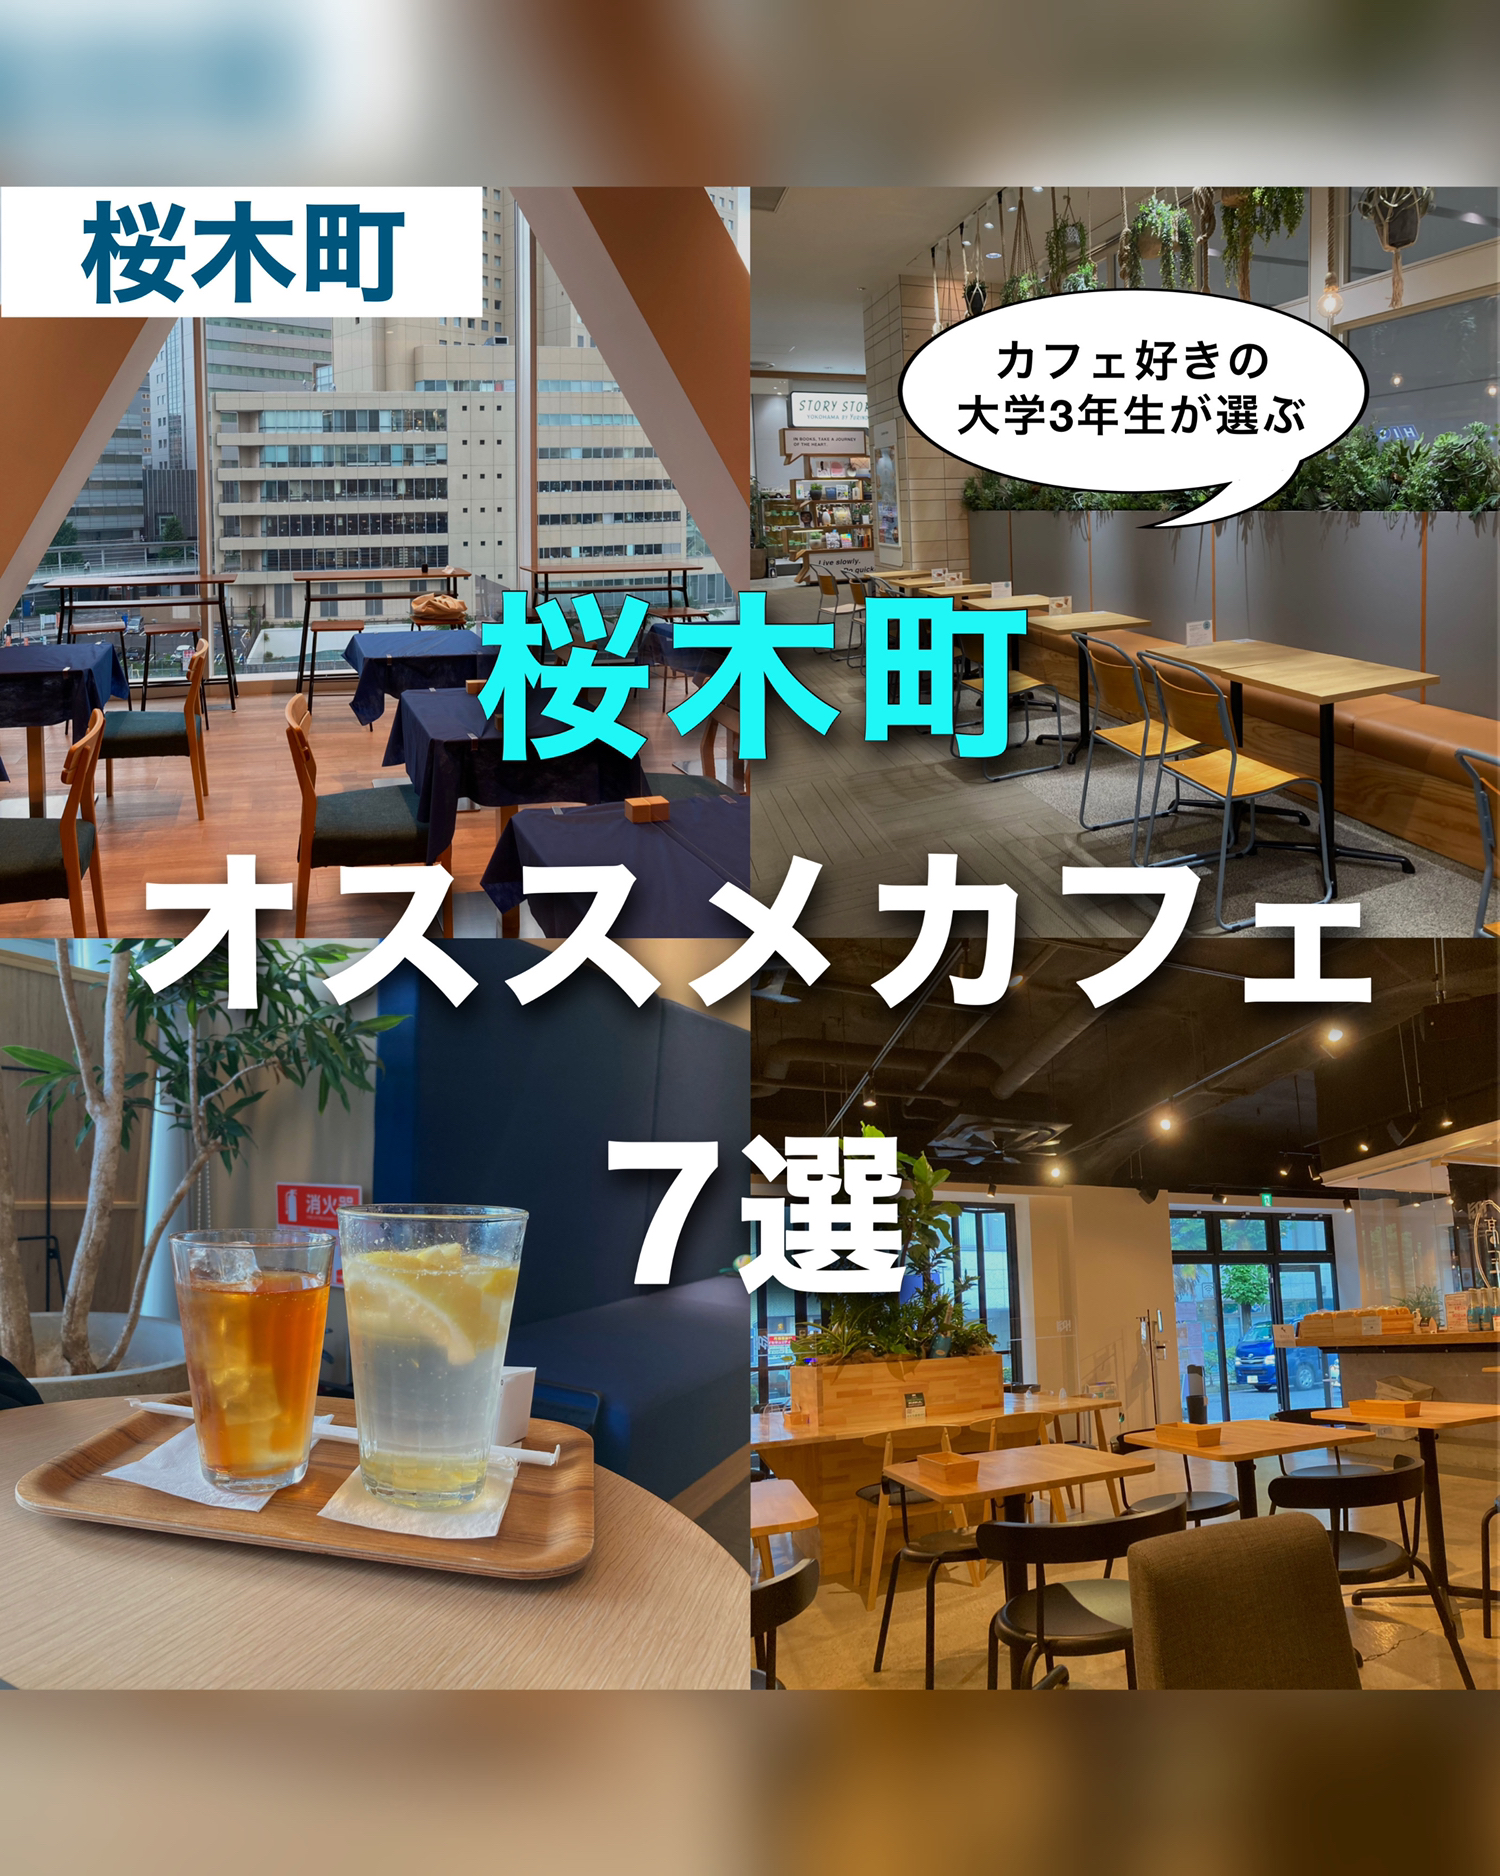 桜木町 オススメカフェ7選 ゆき カフェ巡り 東京 神奈川が投稿したフォトブック Lemon8